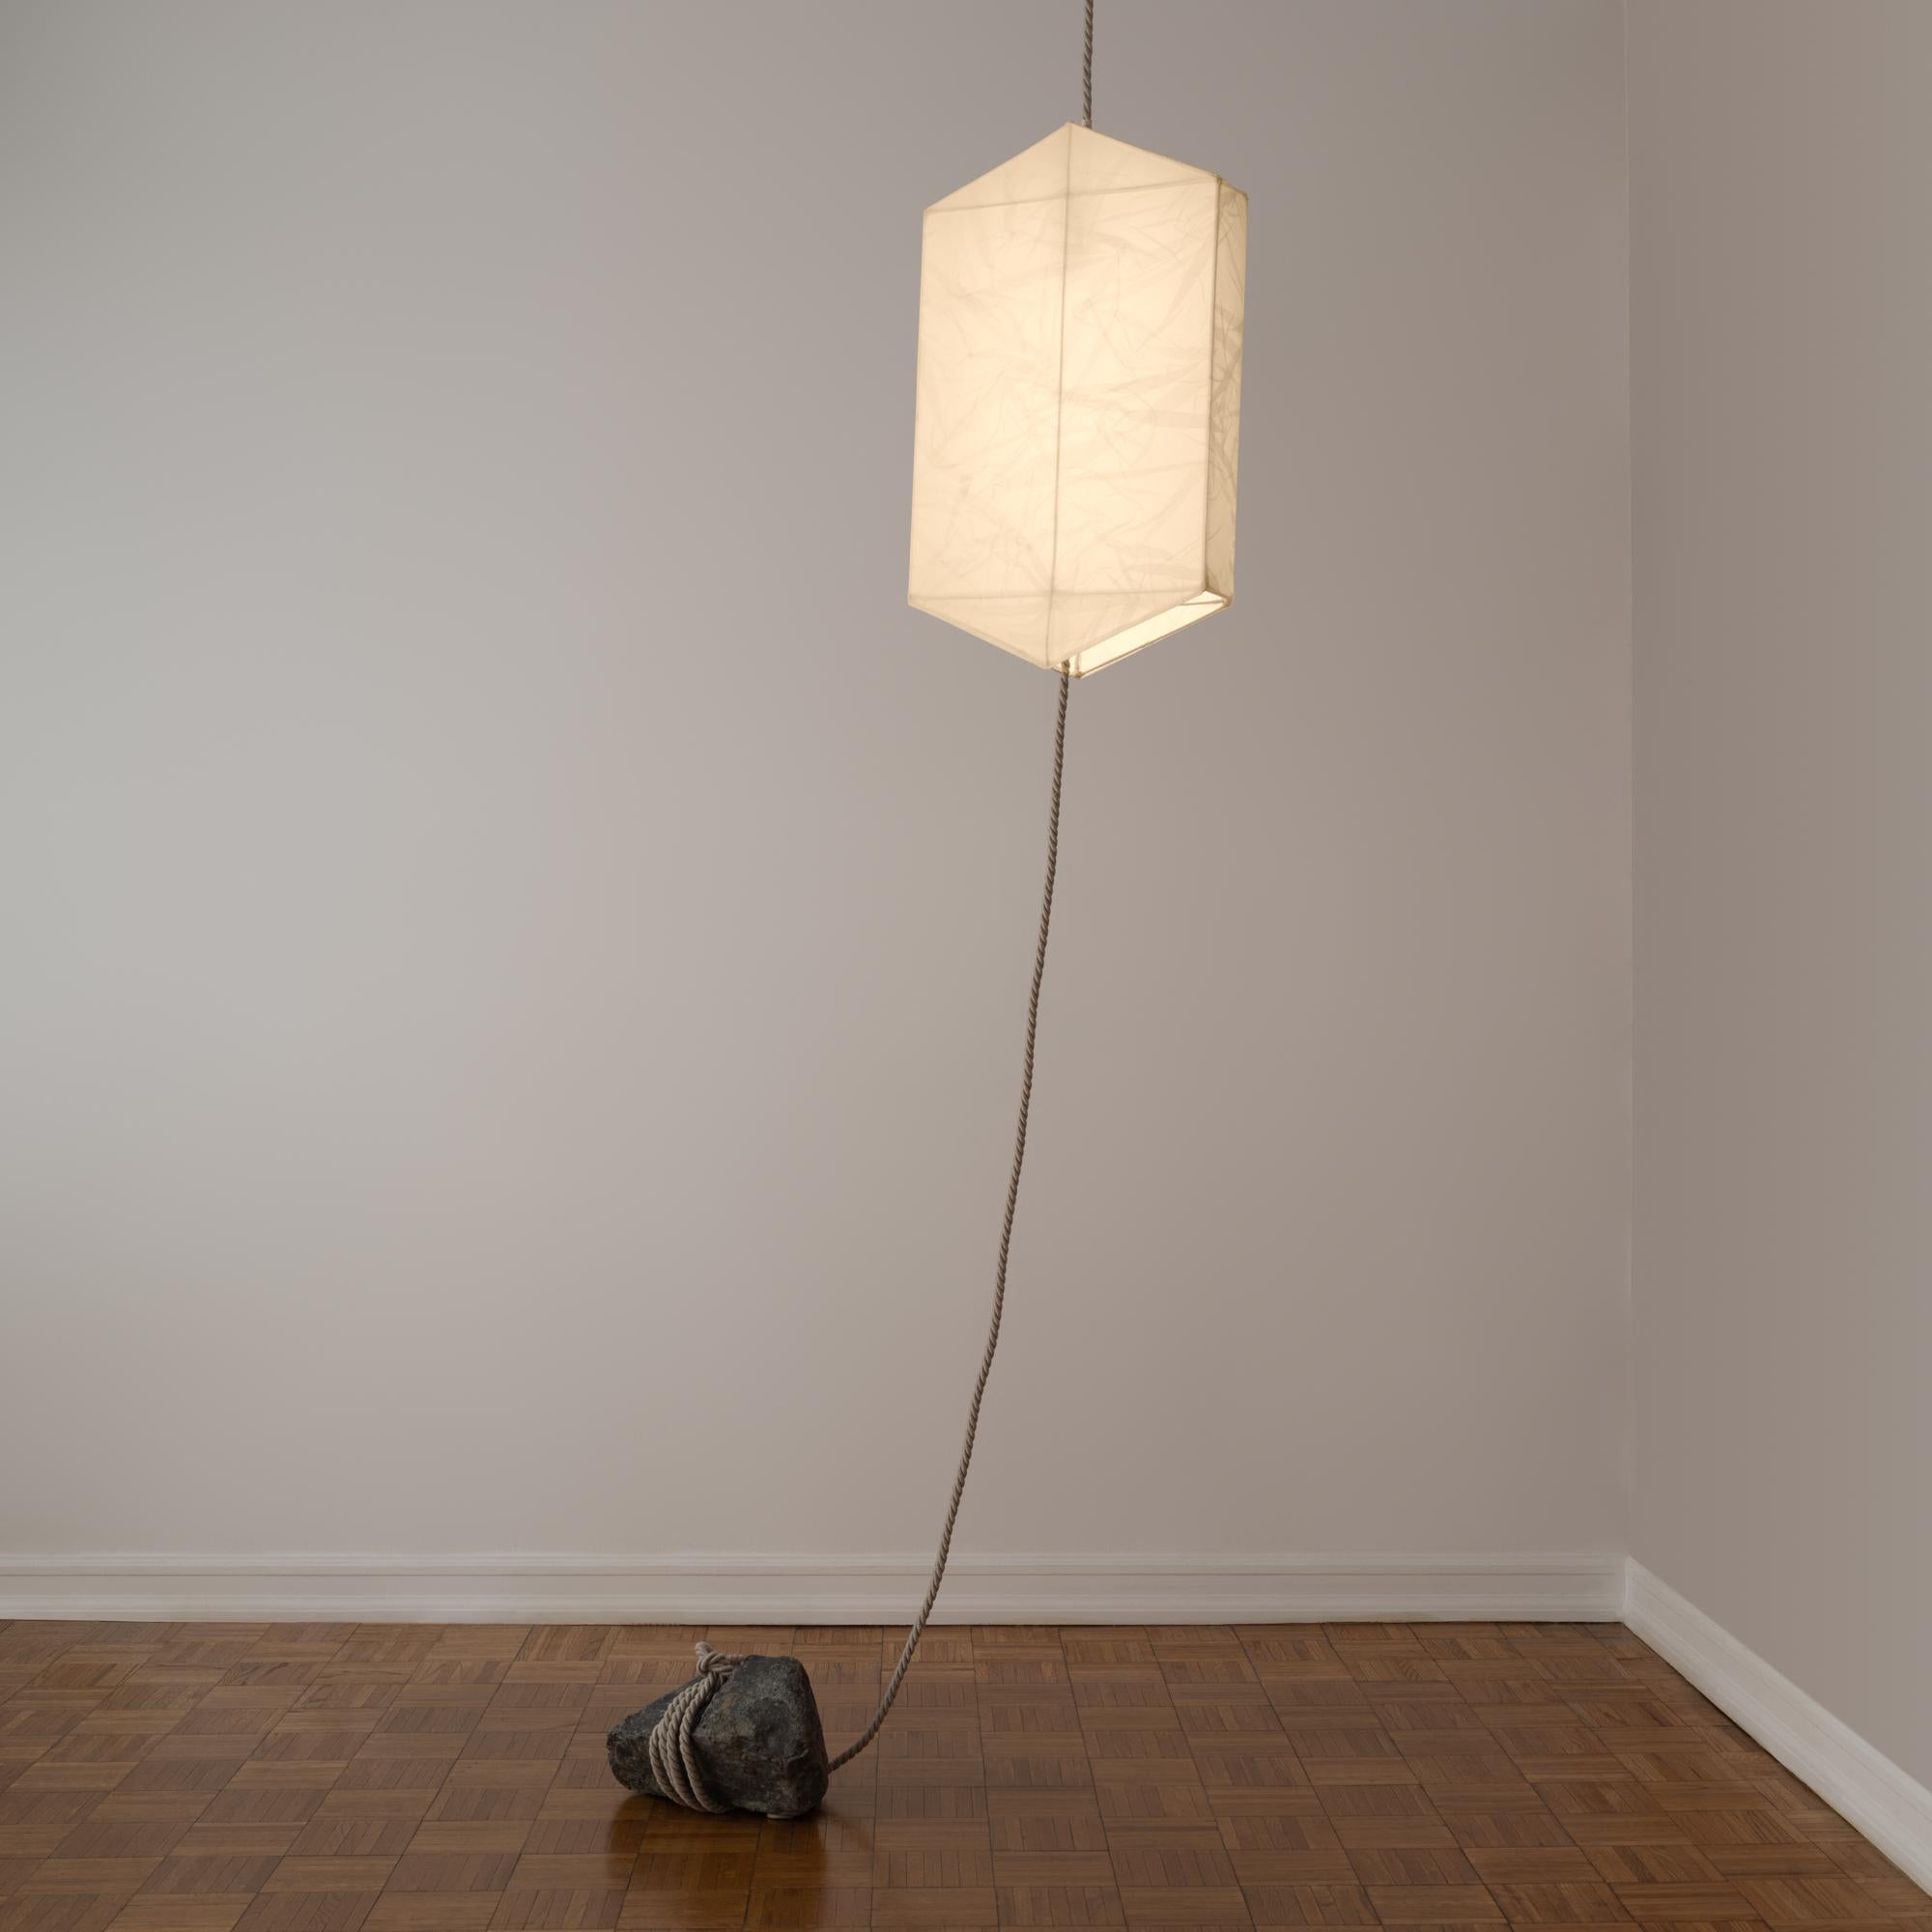 Lampe suspendue unique en son genre, semblable à une lanterne, composée d'organza de soie tendu sur un cadre hexagonal en fil d'acier, fixé au plafond par une corde et ancré au sol par une pierre. Conçue par Rafael Prieto en tandem avec l'artiste et